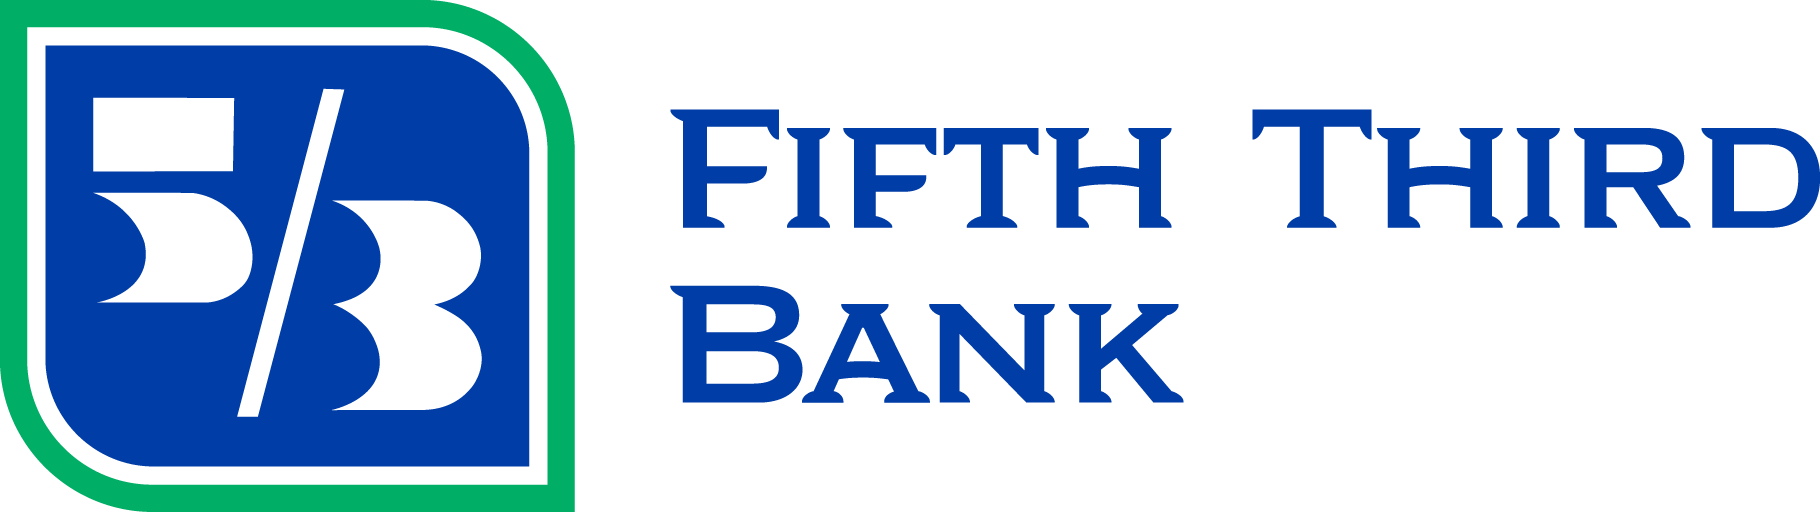 Fifth Third Bank - Fruitport